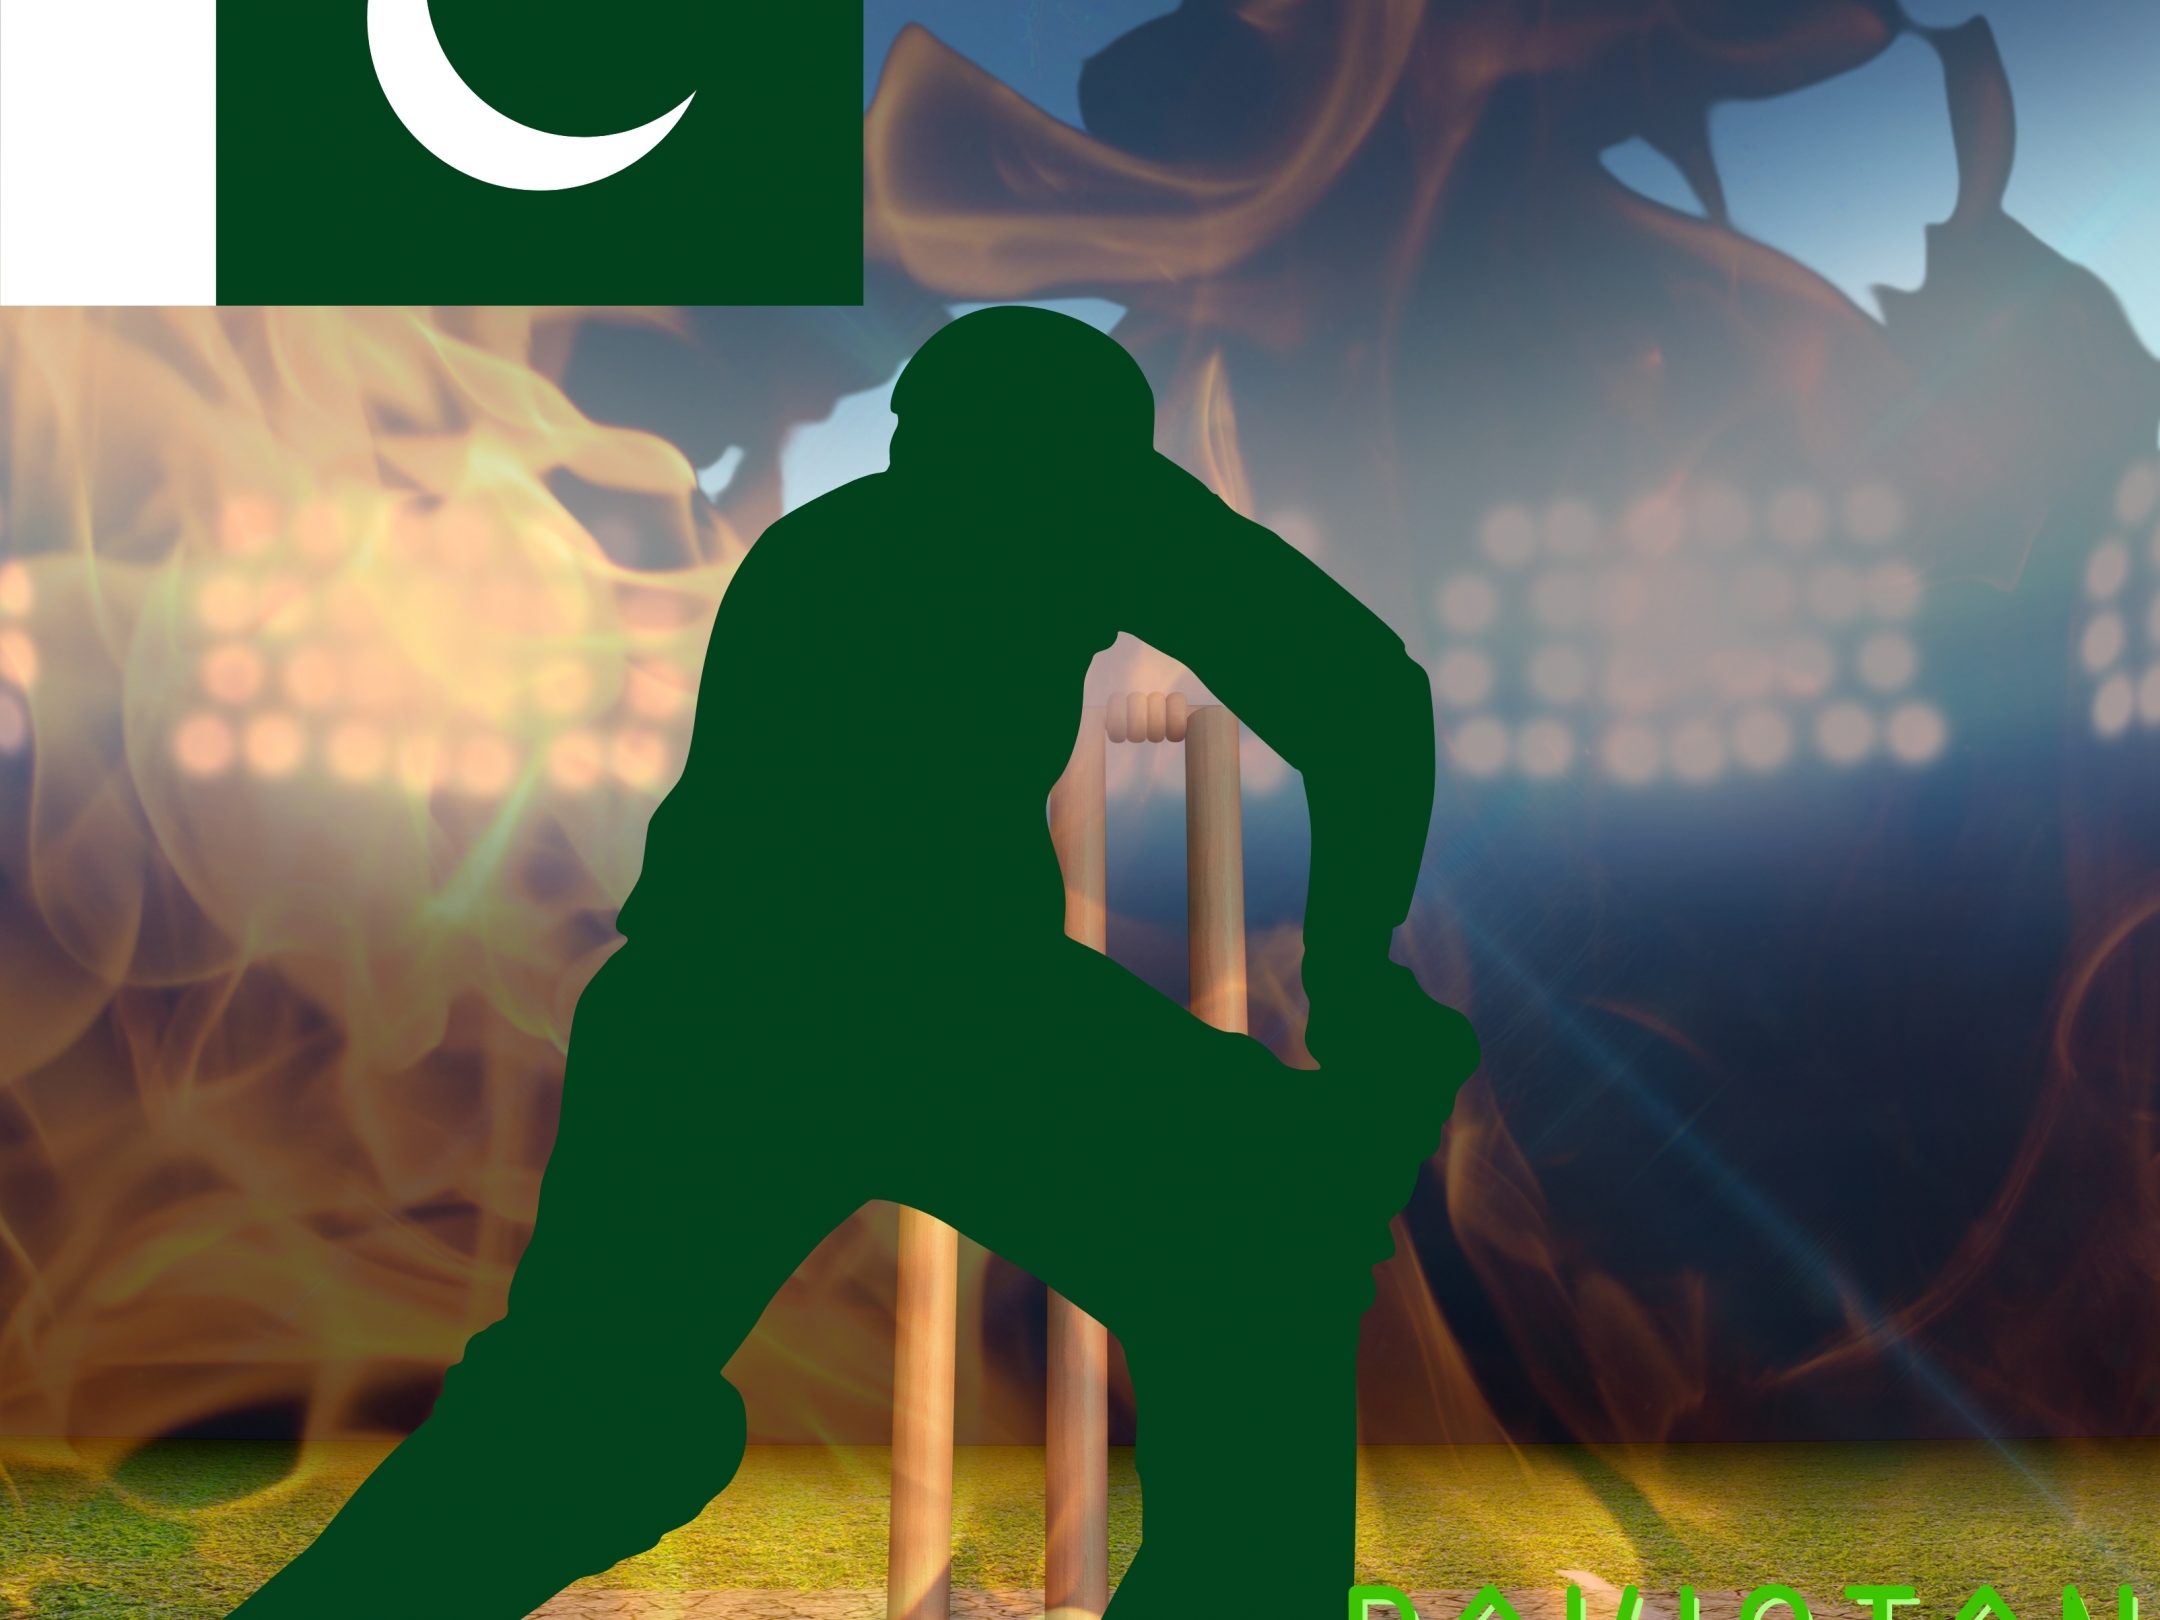 2160x1620 iPad wallpaper 4k Pakistan Cricket Stadium iPad Wallpaper 2160x1620 pixels resolution